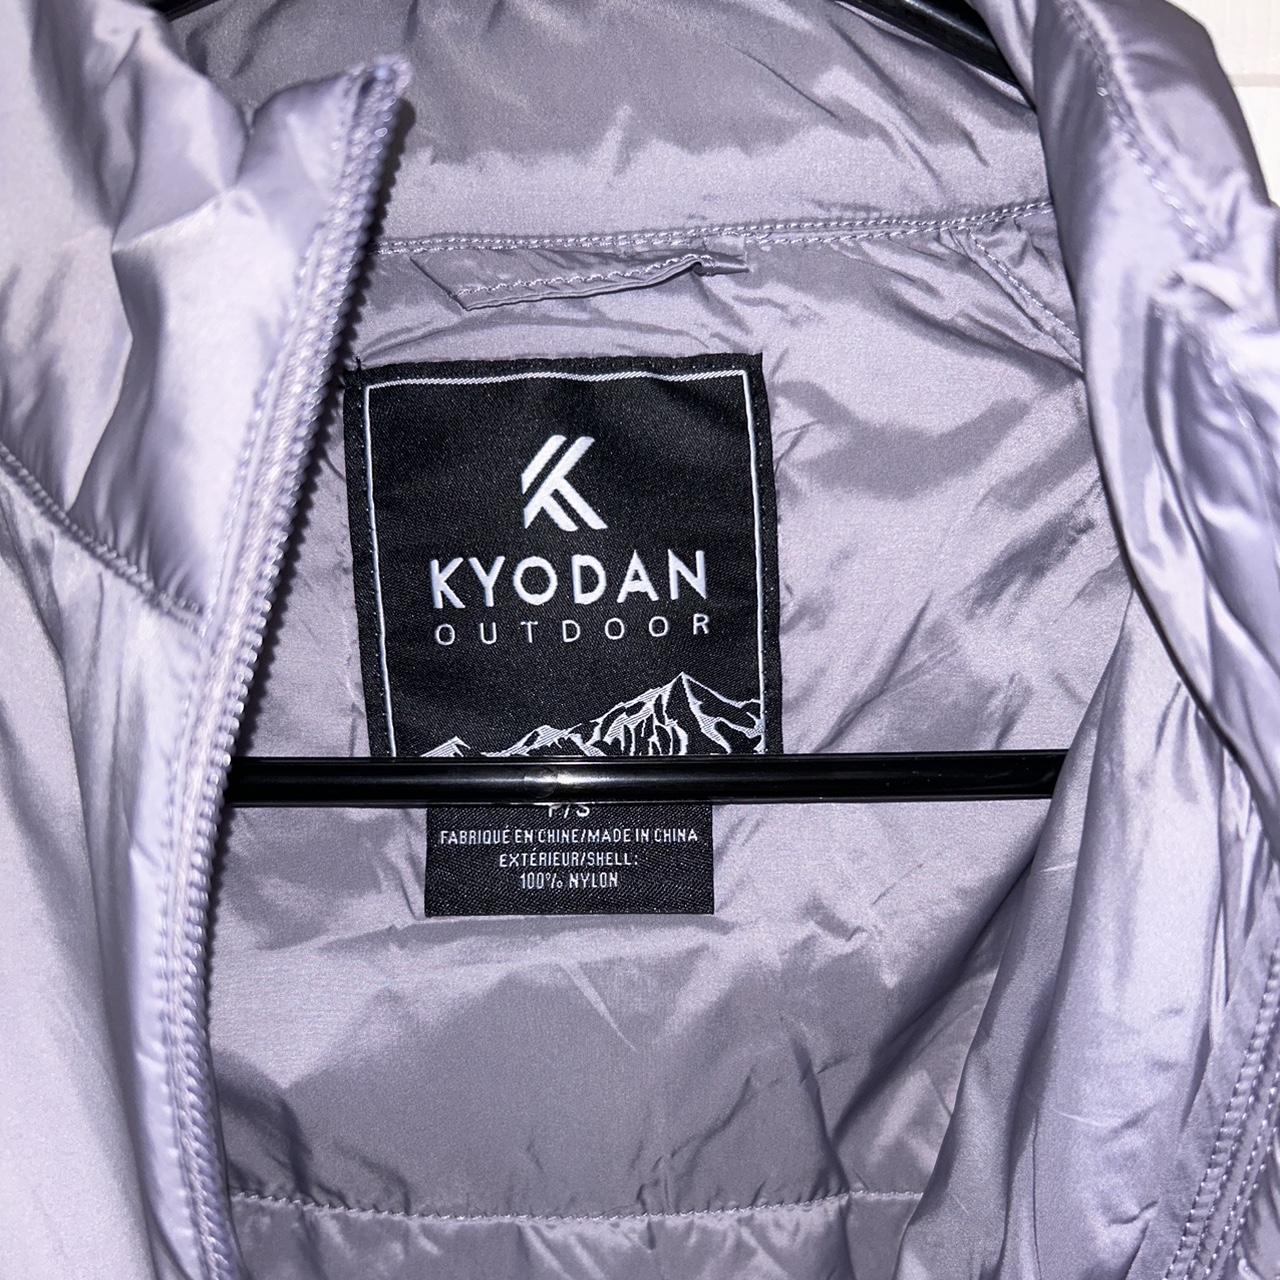 Kyodan Outdoor Lightweight Jacket - Size S -brand - Depop